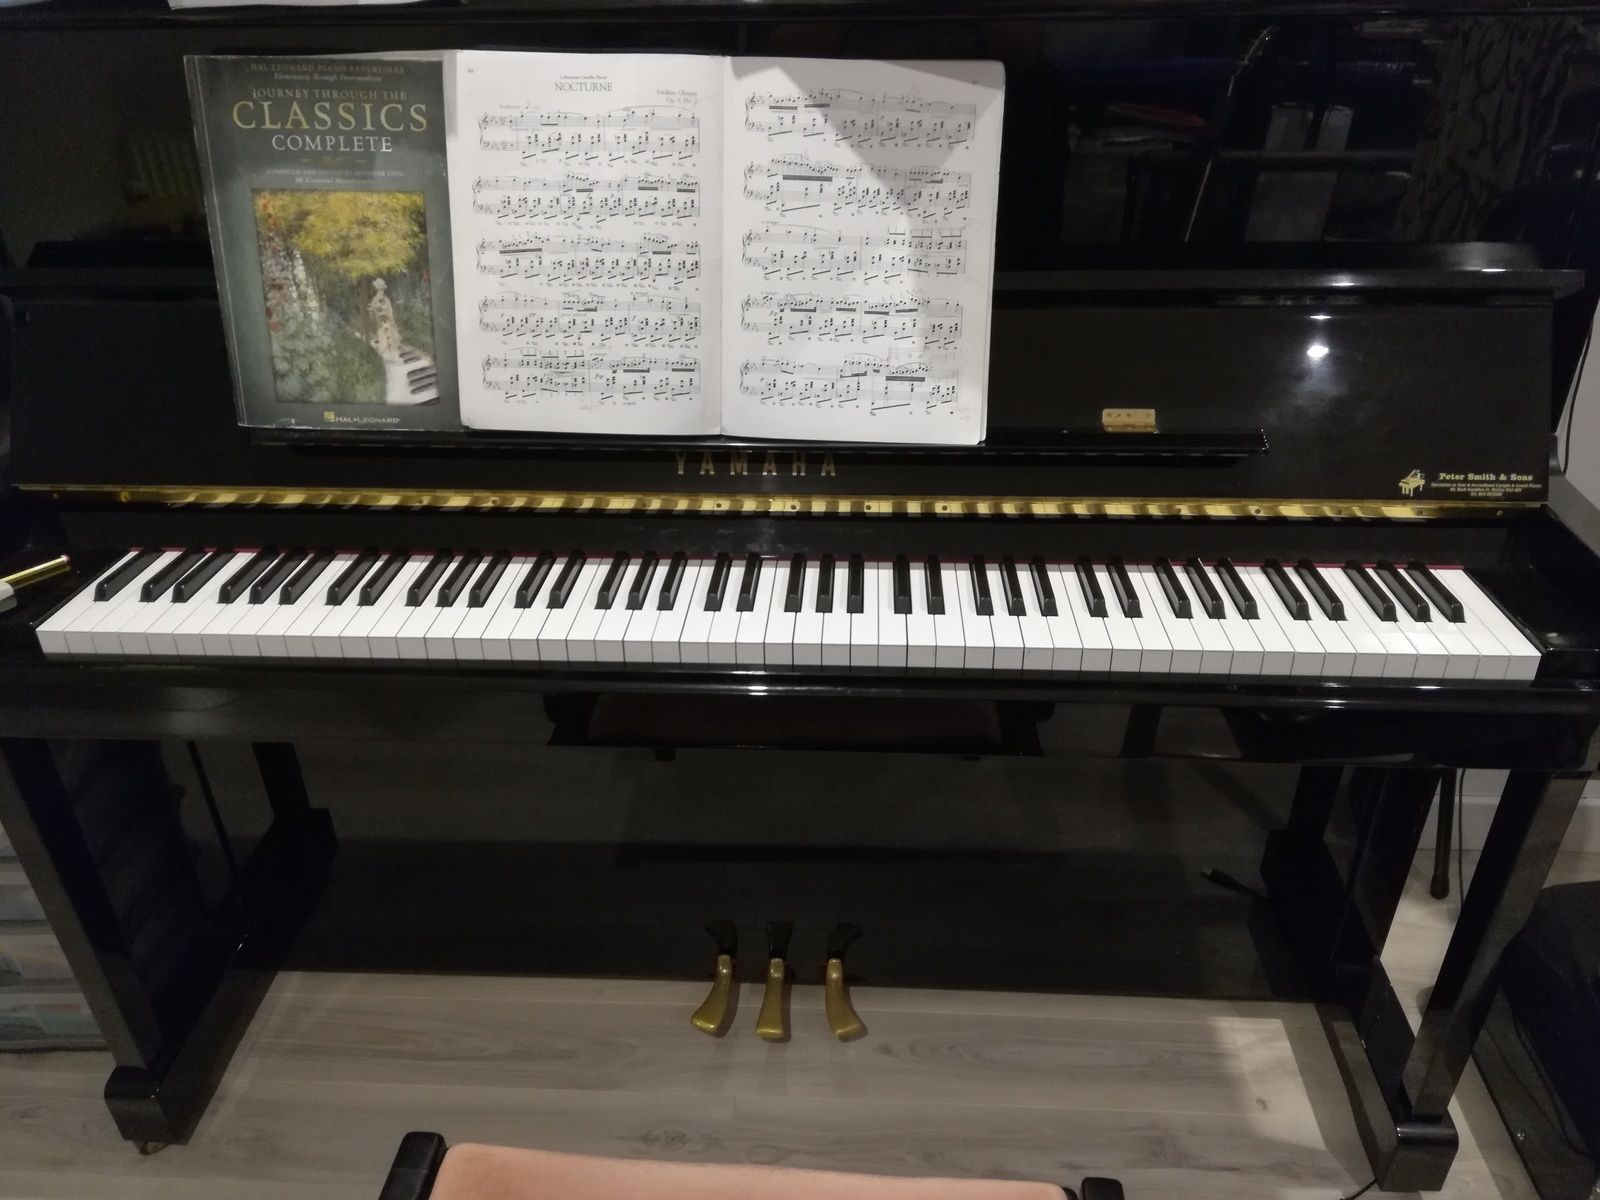 3657: Lockdown piano practice: Chopin Nocturne in E-flat major, Op.9, No.2 excerpt